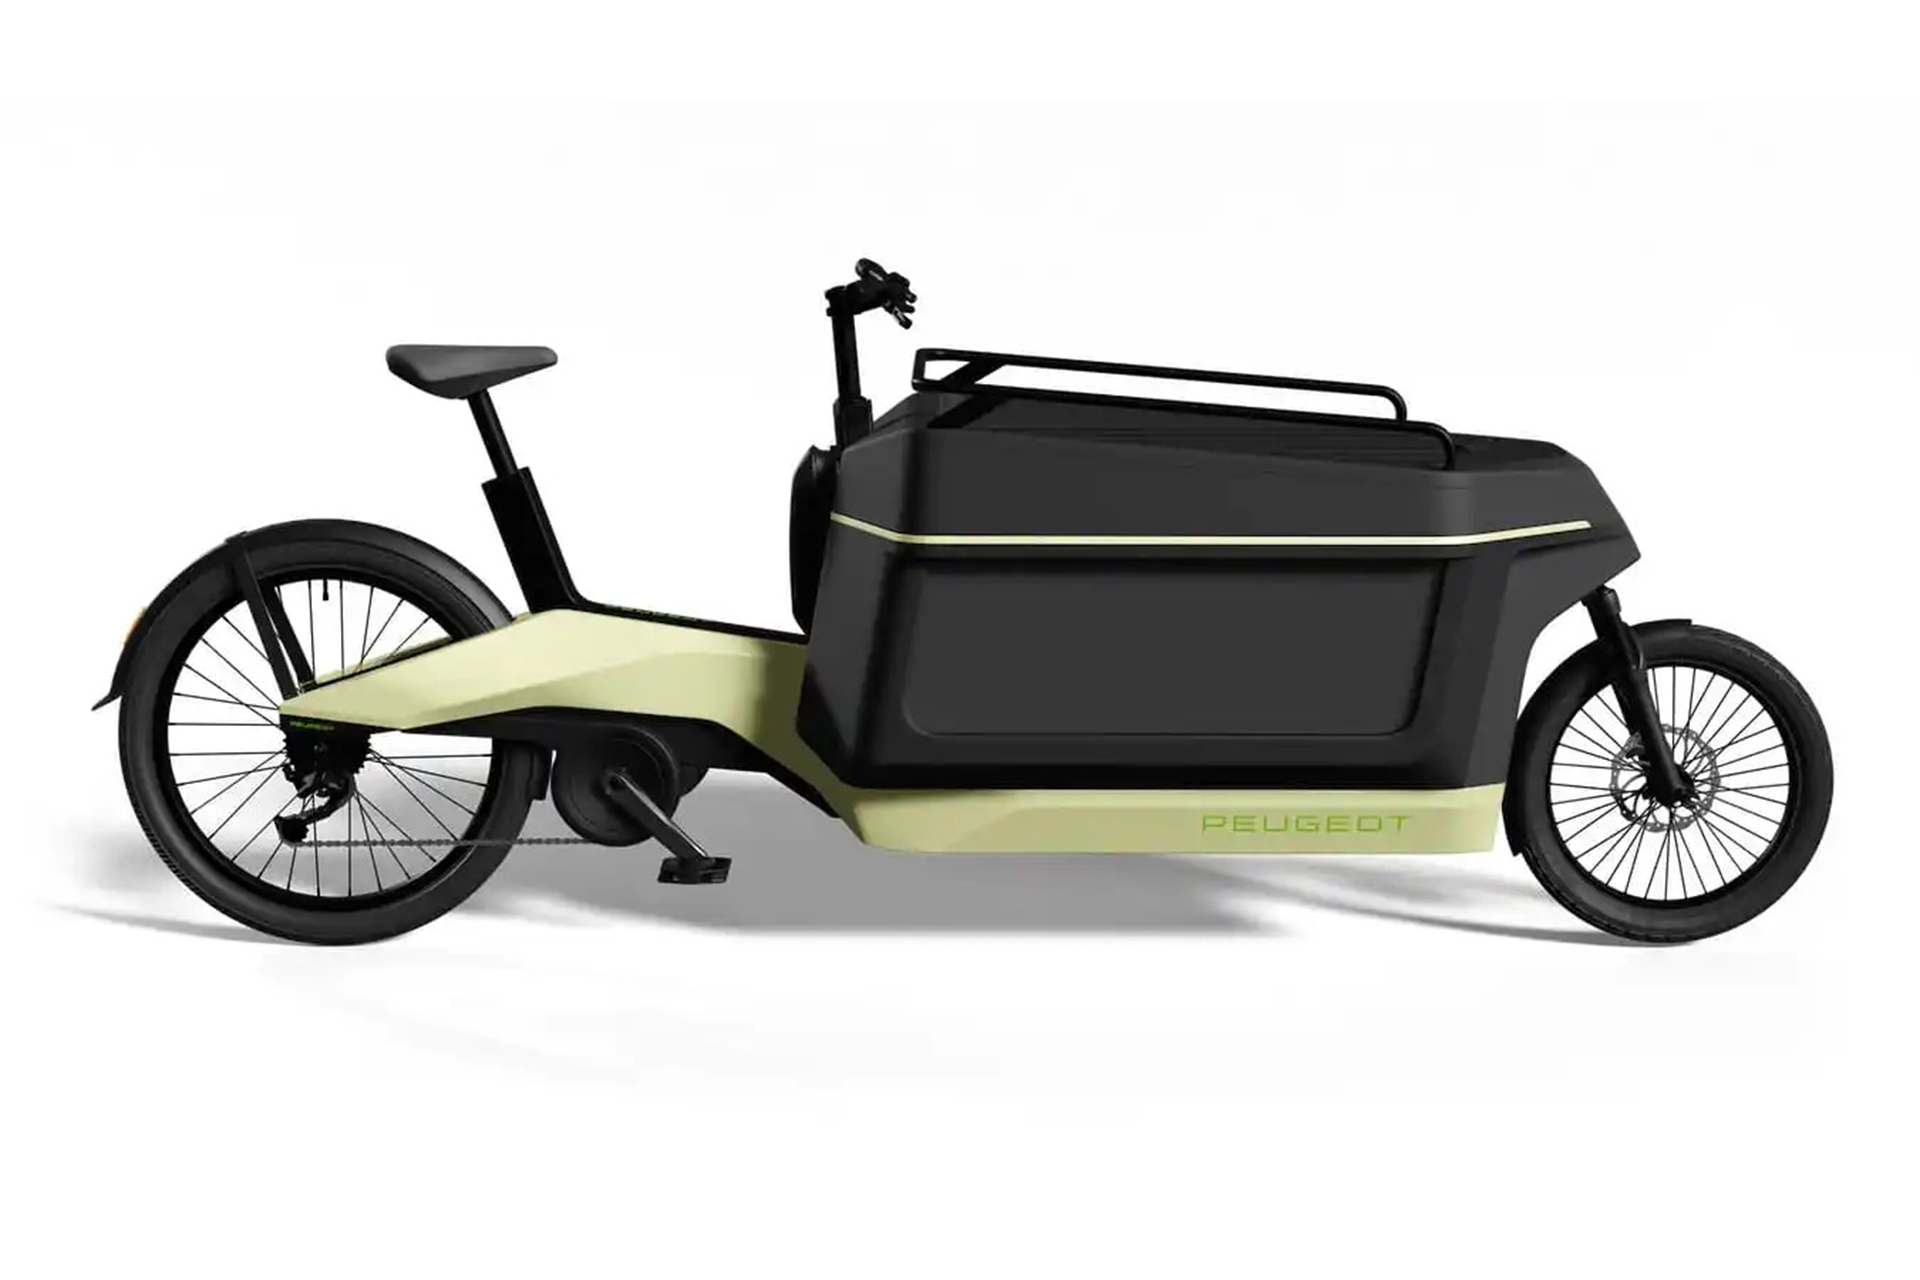 Peugeot anuncia bicicleta elétrica de carga projetada para transportar até três crianças